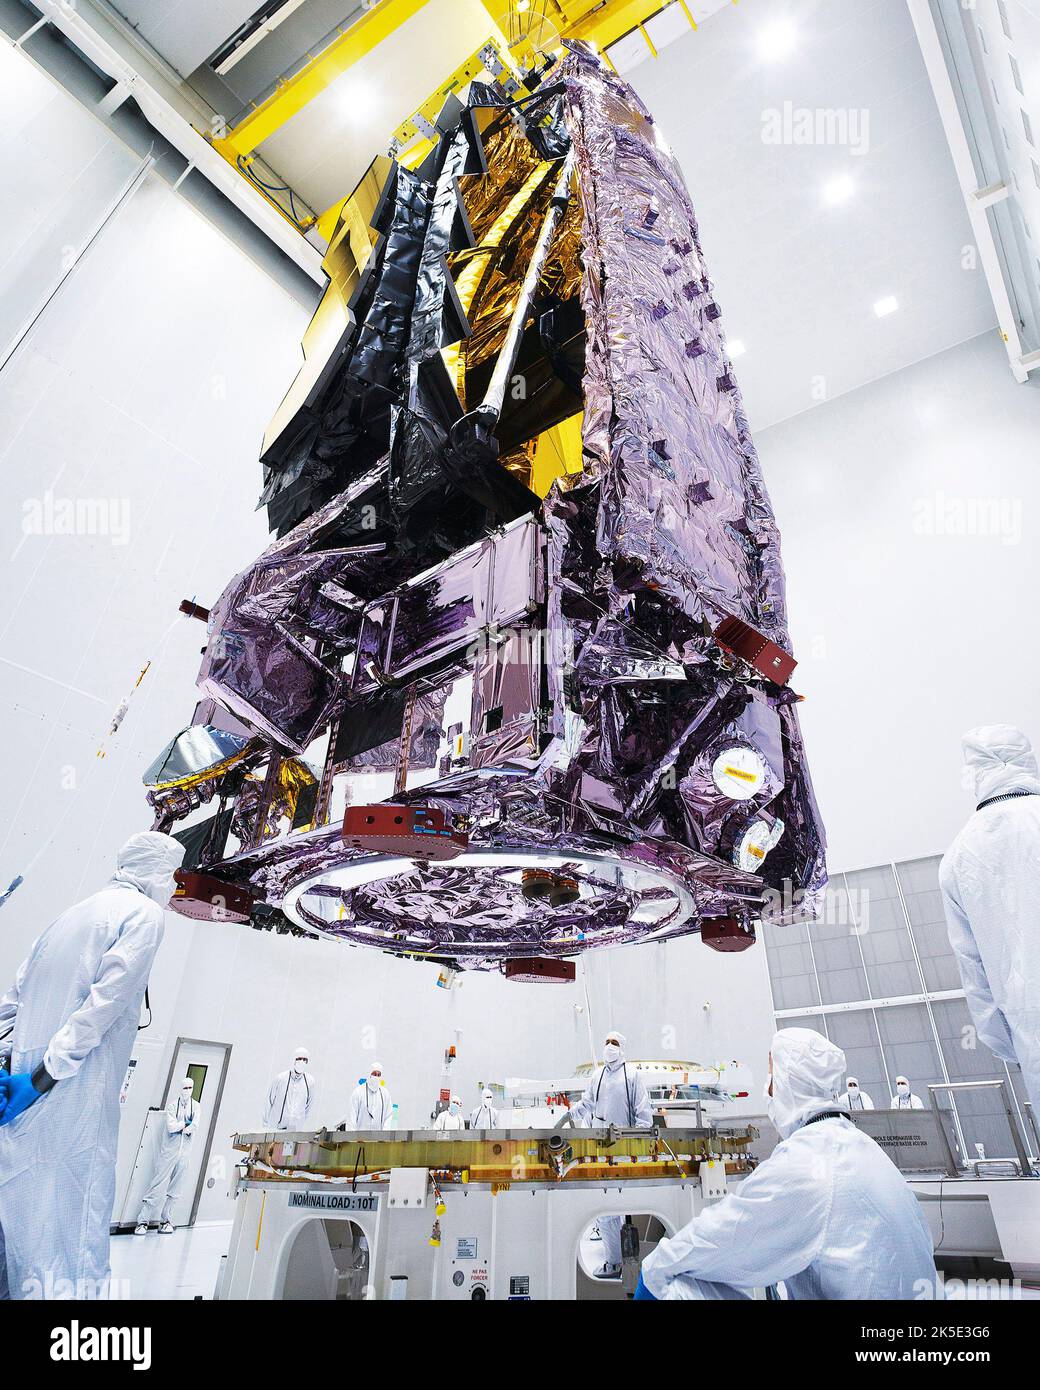 Das James Webb Space Telescope (JWST) wurde am europäischen Weltraumbahnhof in Kourou, Französisch-Guayana, auf den Flugstartadapter gehoben. Webb wurde am 25. Dezember 2021 gestartet. Eine optimierte Version eines NASA-Bildes vom erfahrenen Hauptfotografen Chris Gunn. Quelle: NASA/Chris Gunn. Nur für redaktionelle Zwecke. Stockfoto